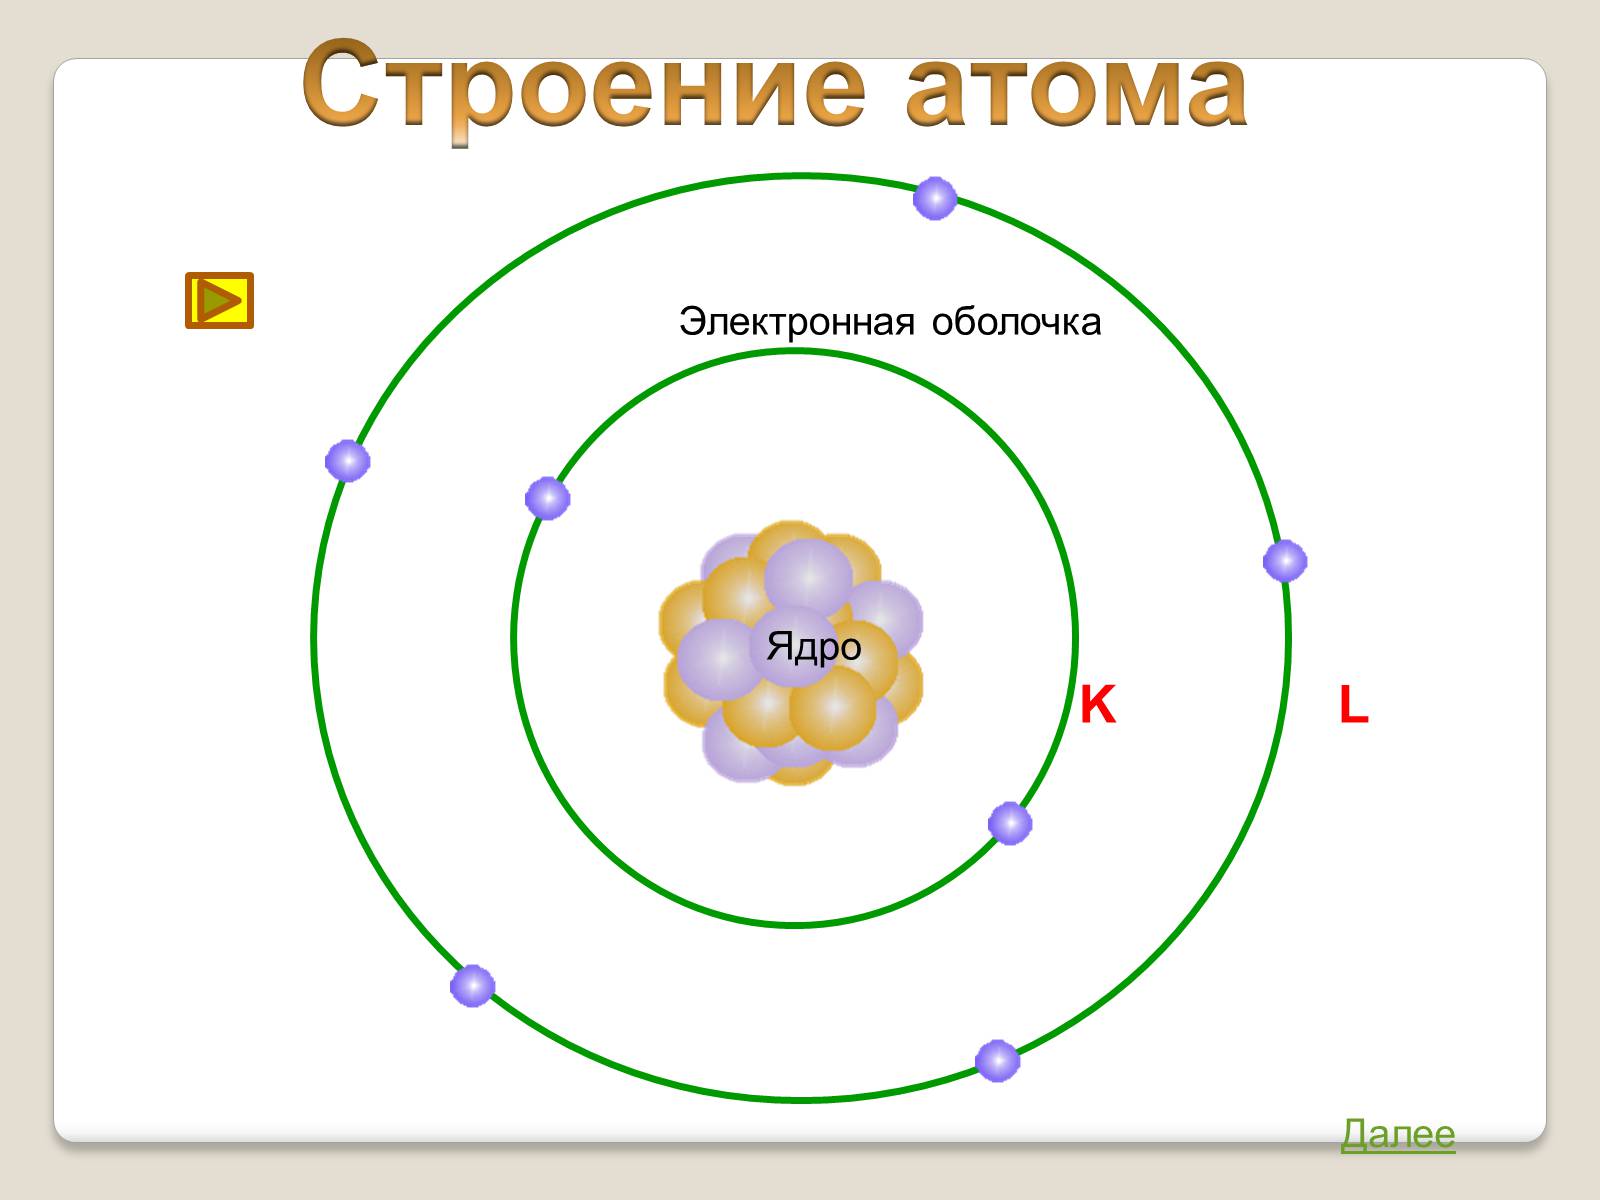 Состав атома модель